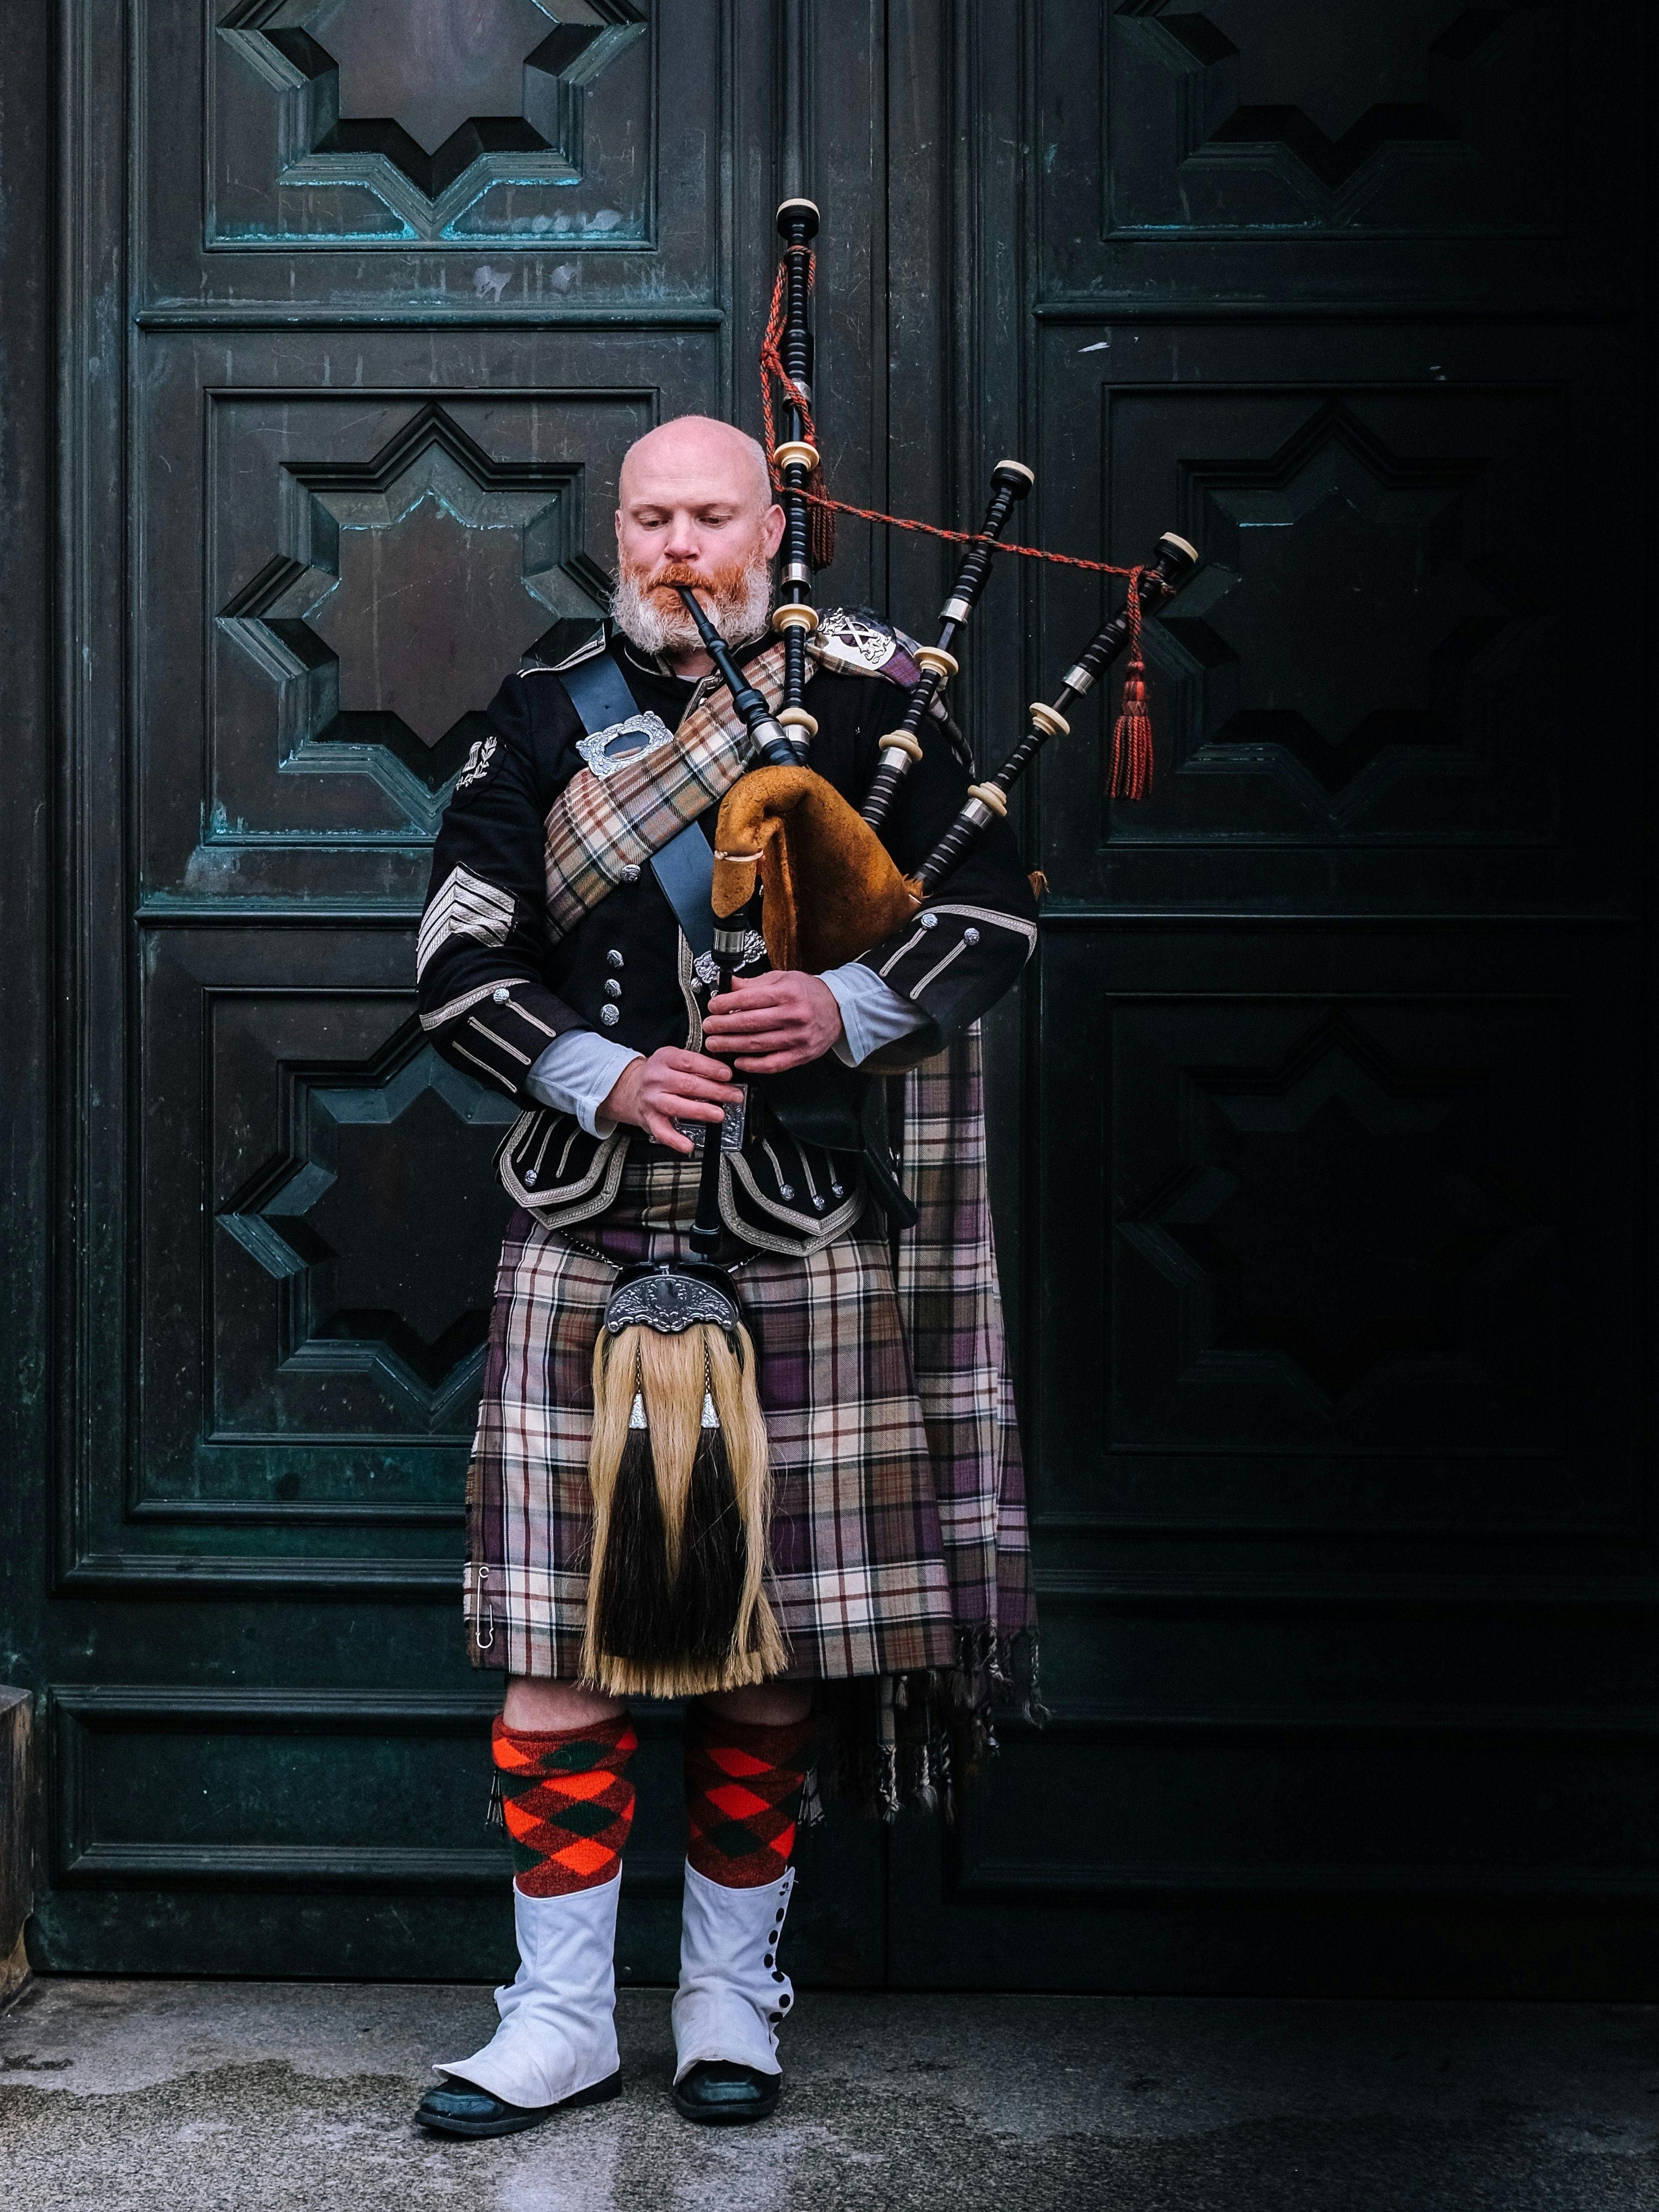 Man wearing kilt playing bagpipe in Scotland.